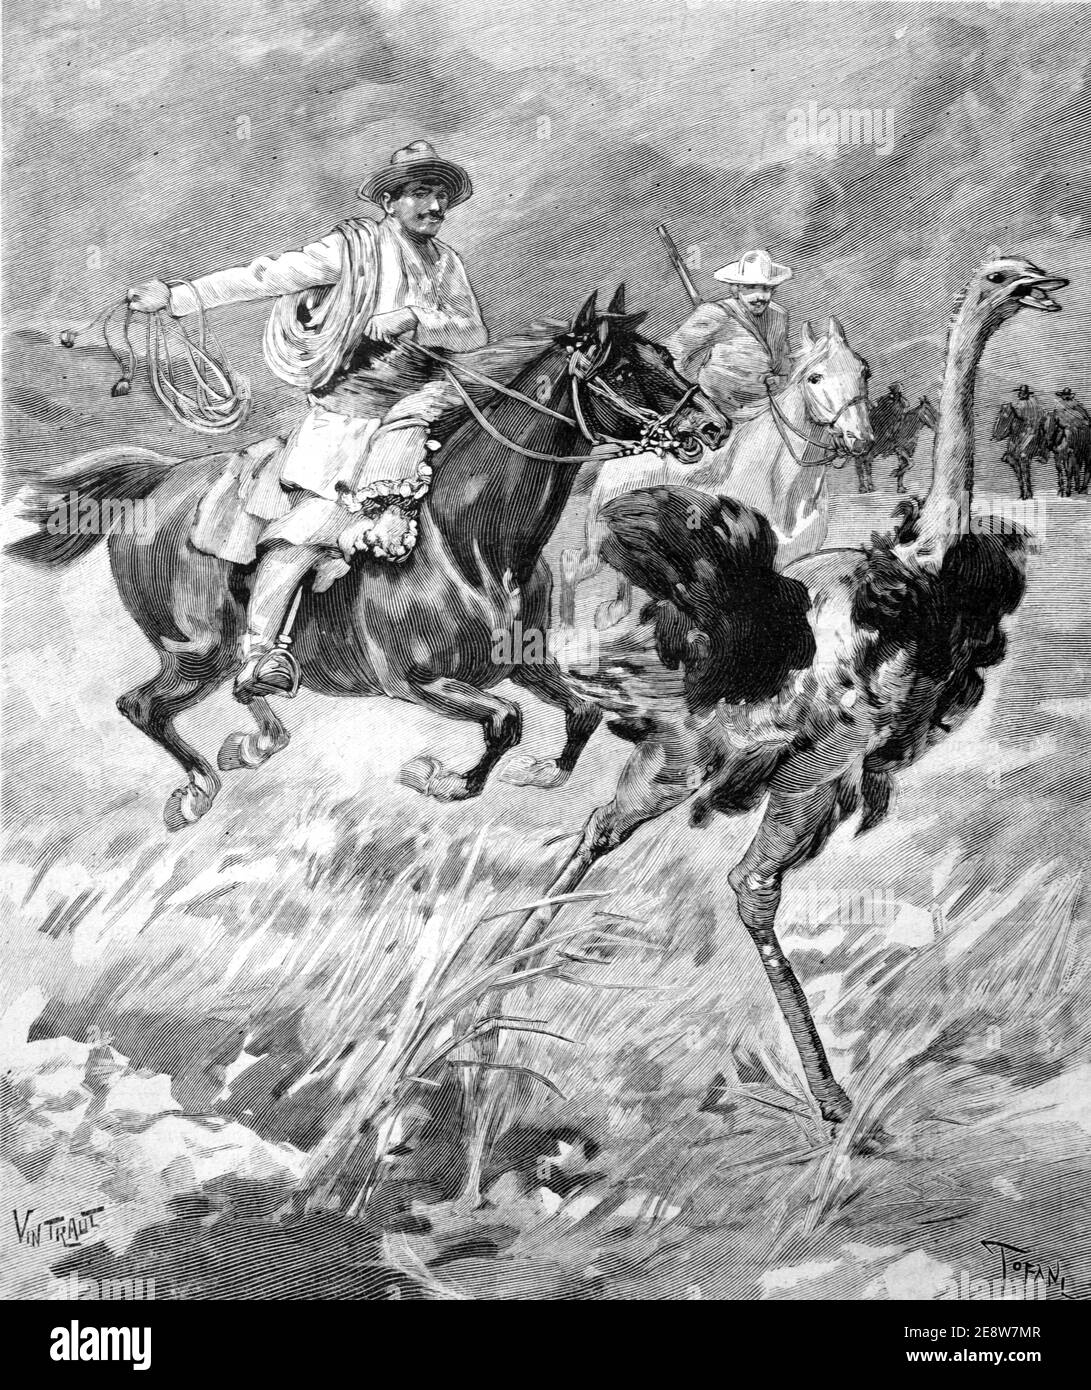 Gauchos ou cow-boys d'Amérique du Sud chassé Rheas sur l'Amérique du Sud Pampas 1900 Vintage Illustration ou gravure Banque D'Images